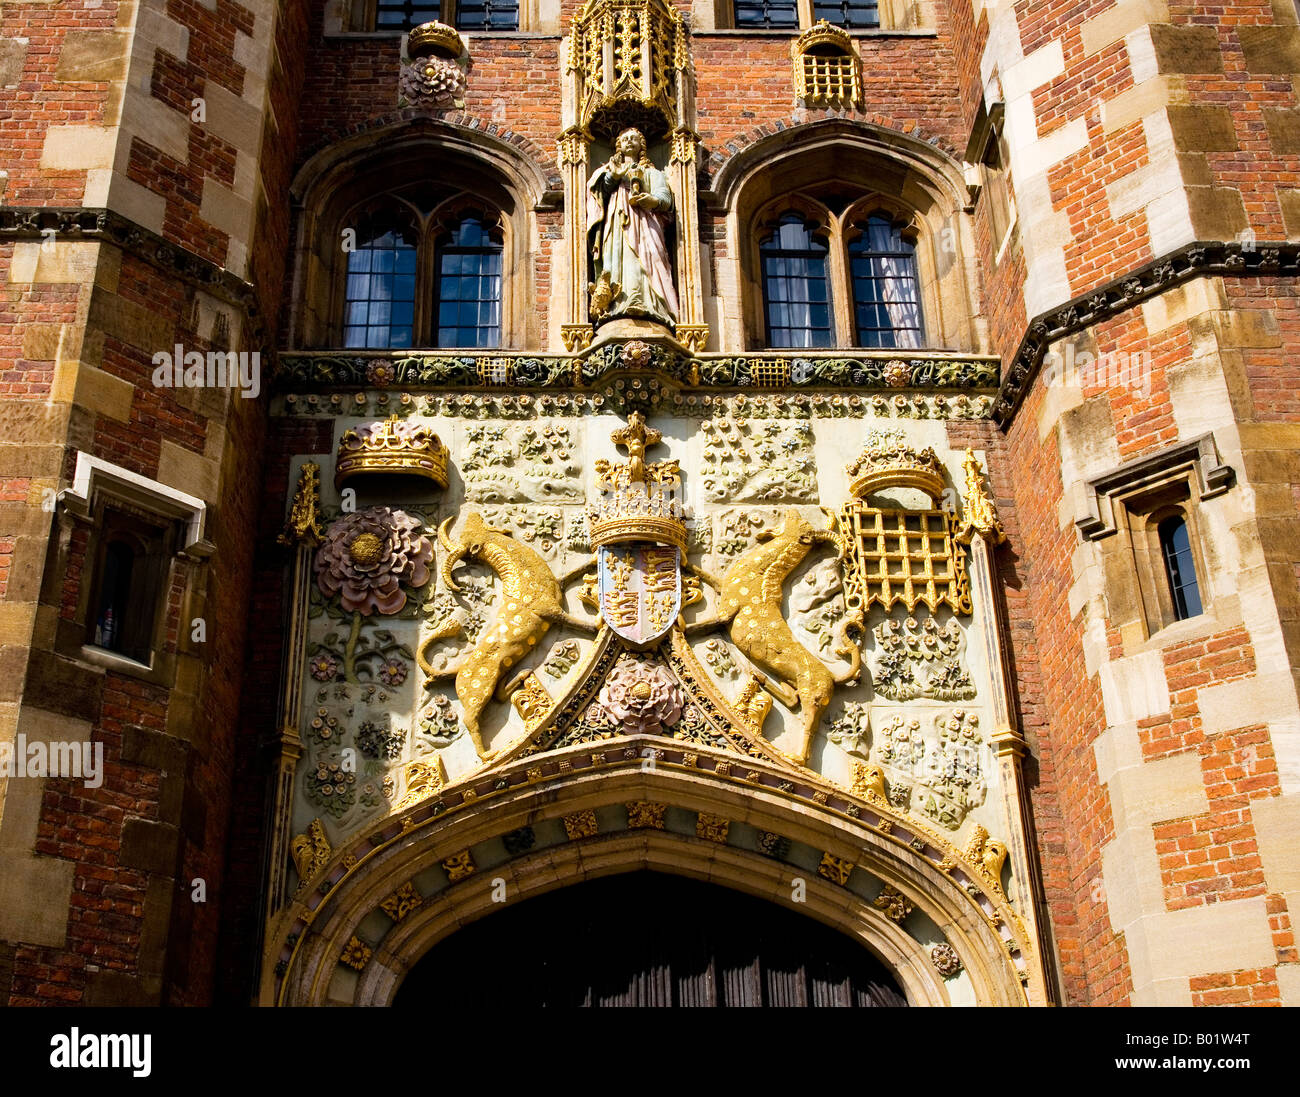 La porte avant, St.John's College de Cambridge. La sculpture représente des armoiries de la Fondatrice, Lady Margaret Beaufort. Banque D'Images